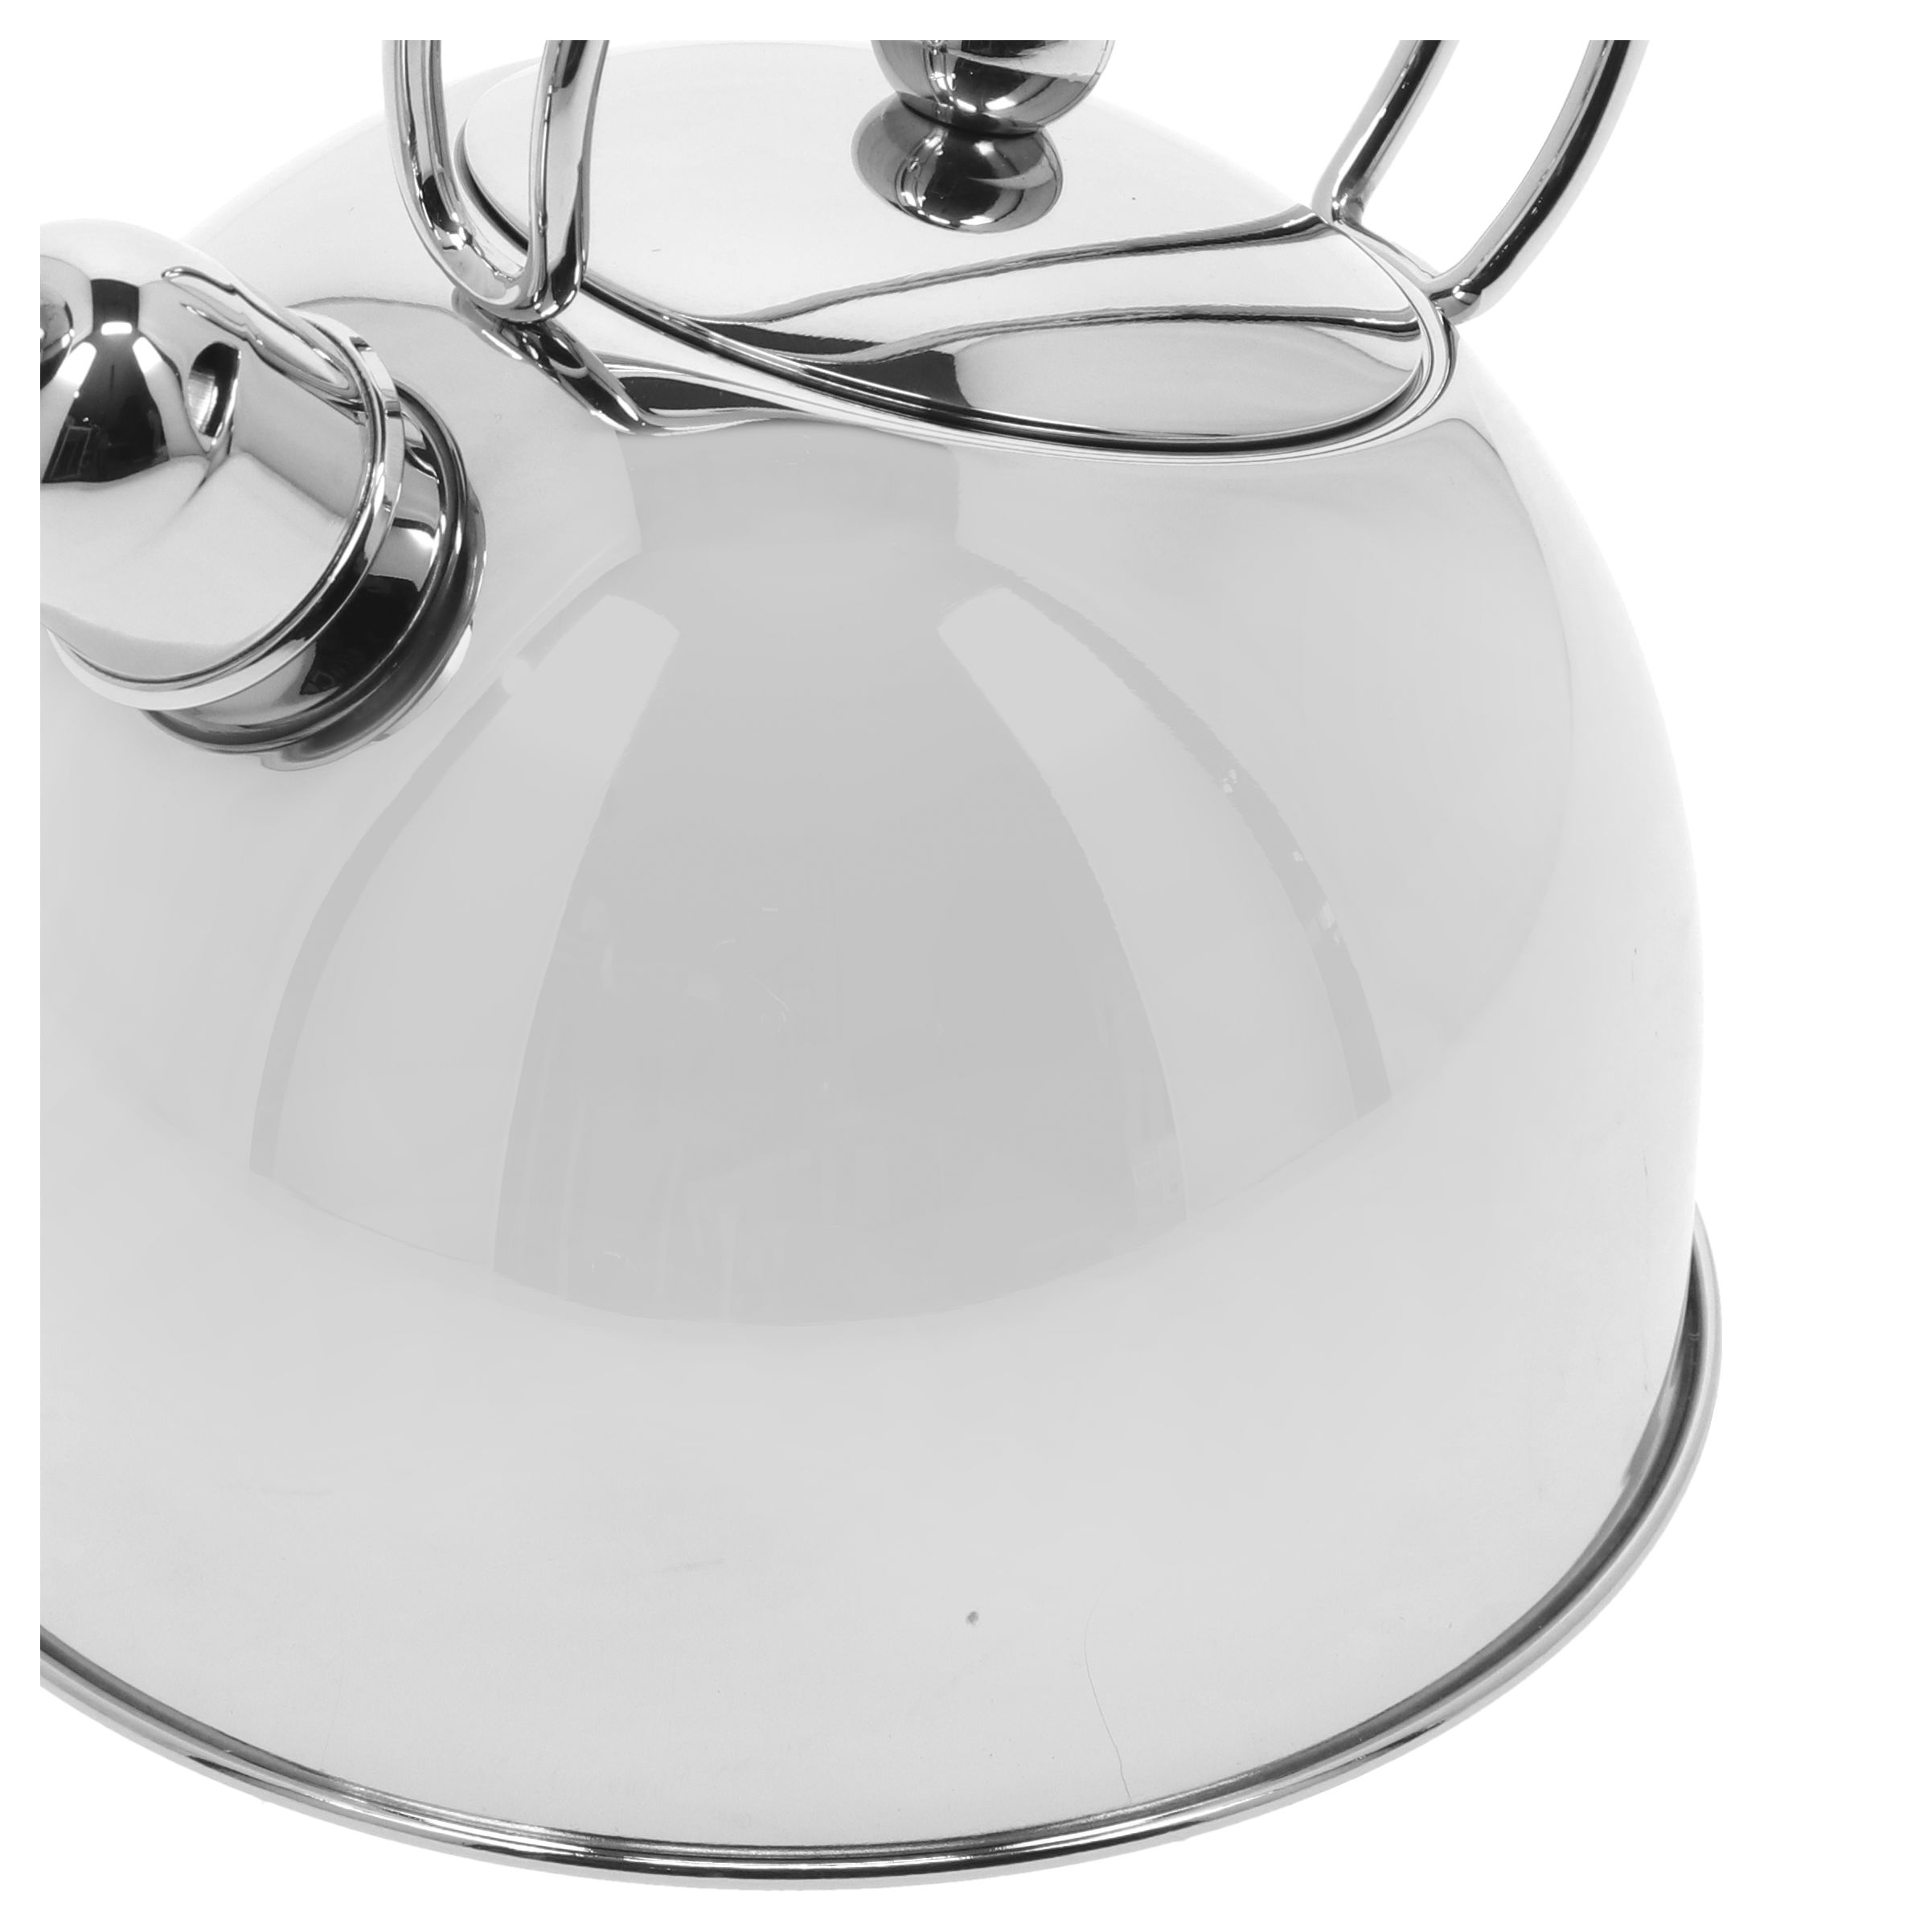 Demeyere Resto 2.6-Quart Stainless Steel Whistling Tea Kettle